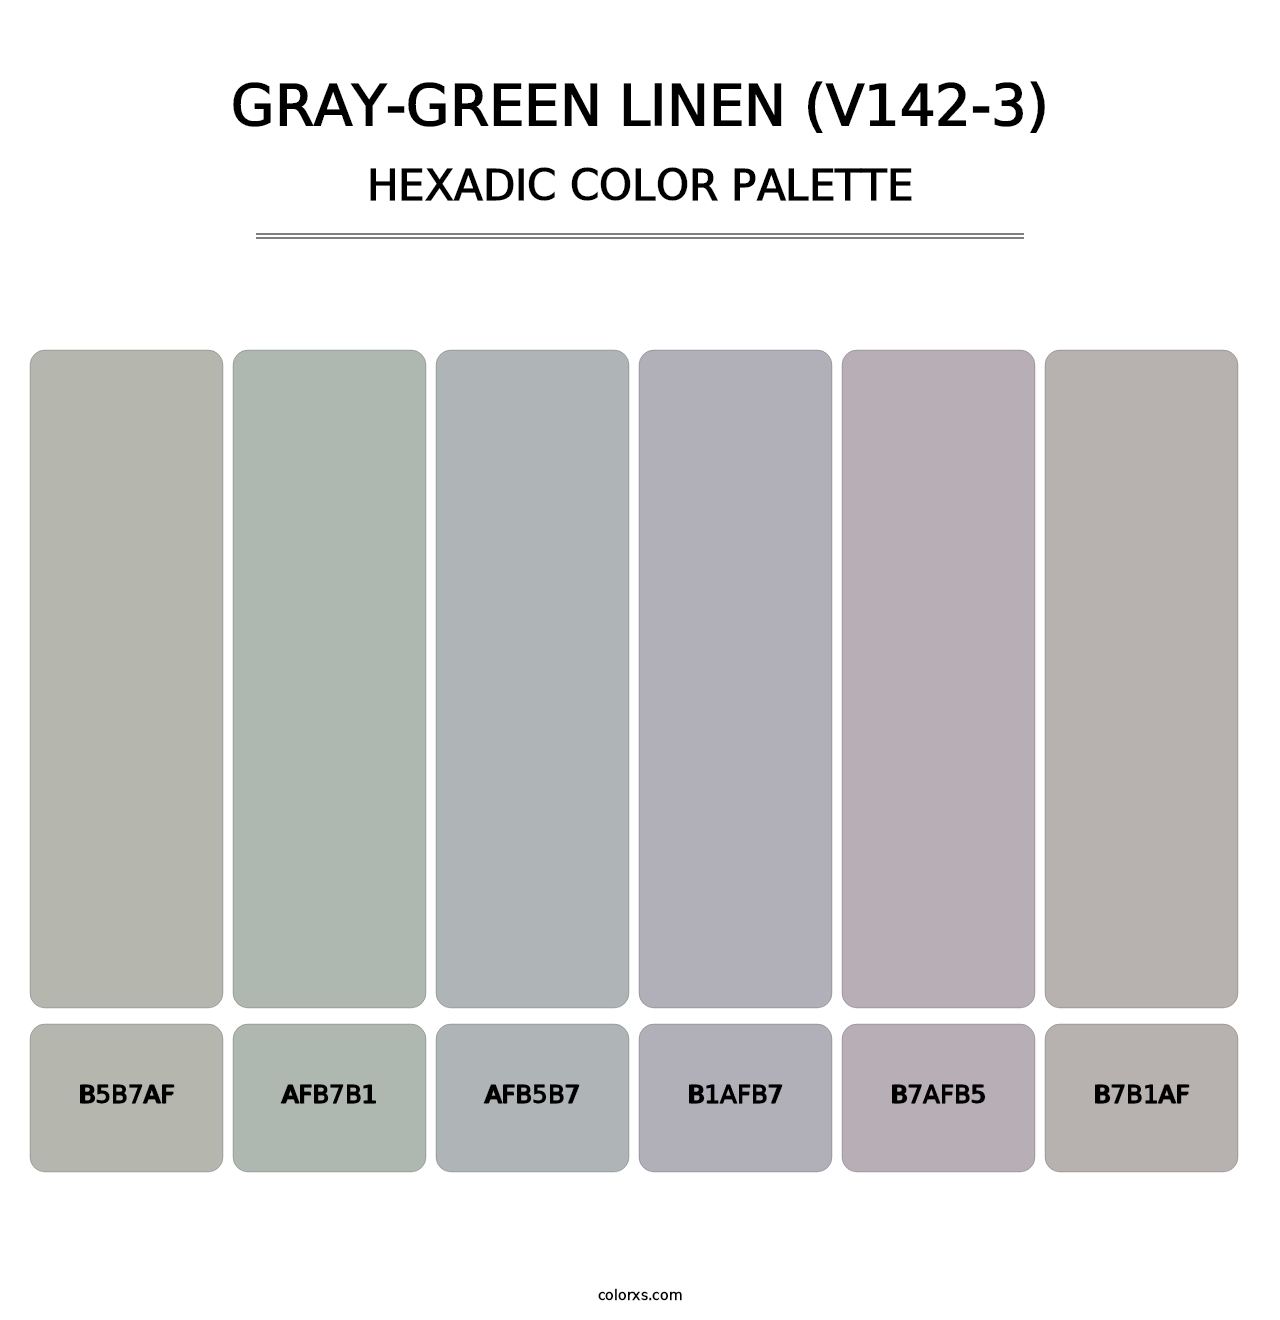 Gray-Green Linen (V142-3) - Hexadic Color Palette